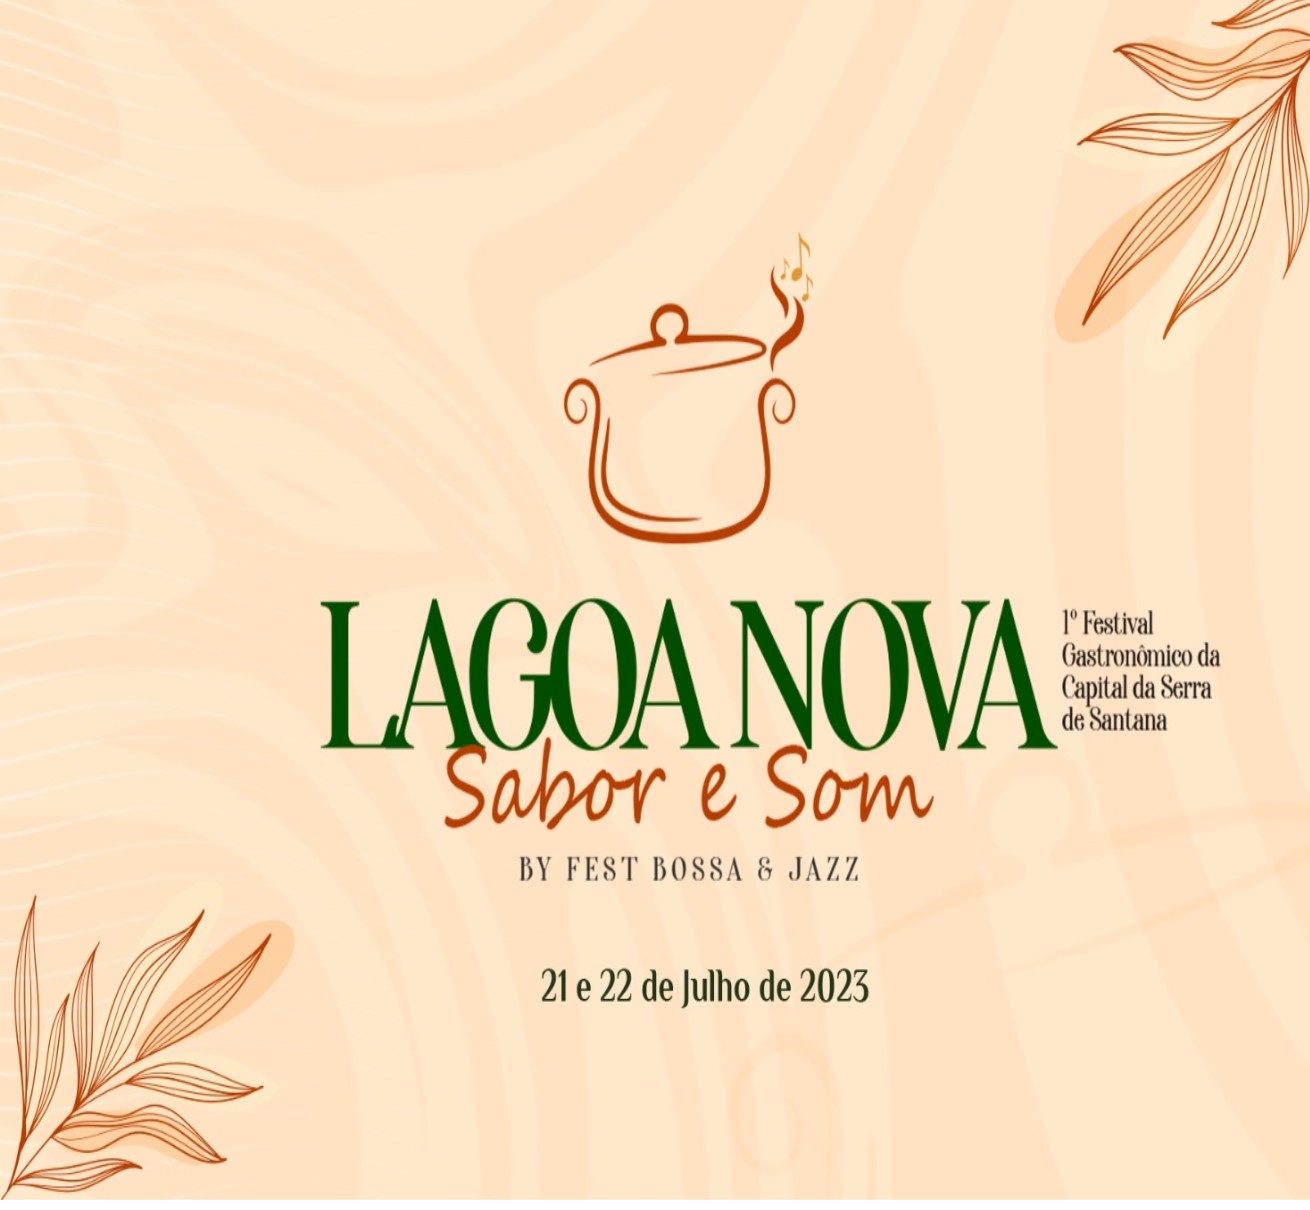 Lagoa Nova Sabor e Som by Fest Bossa & Jazz vai acontecer na capital da Serra de Santana